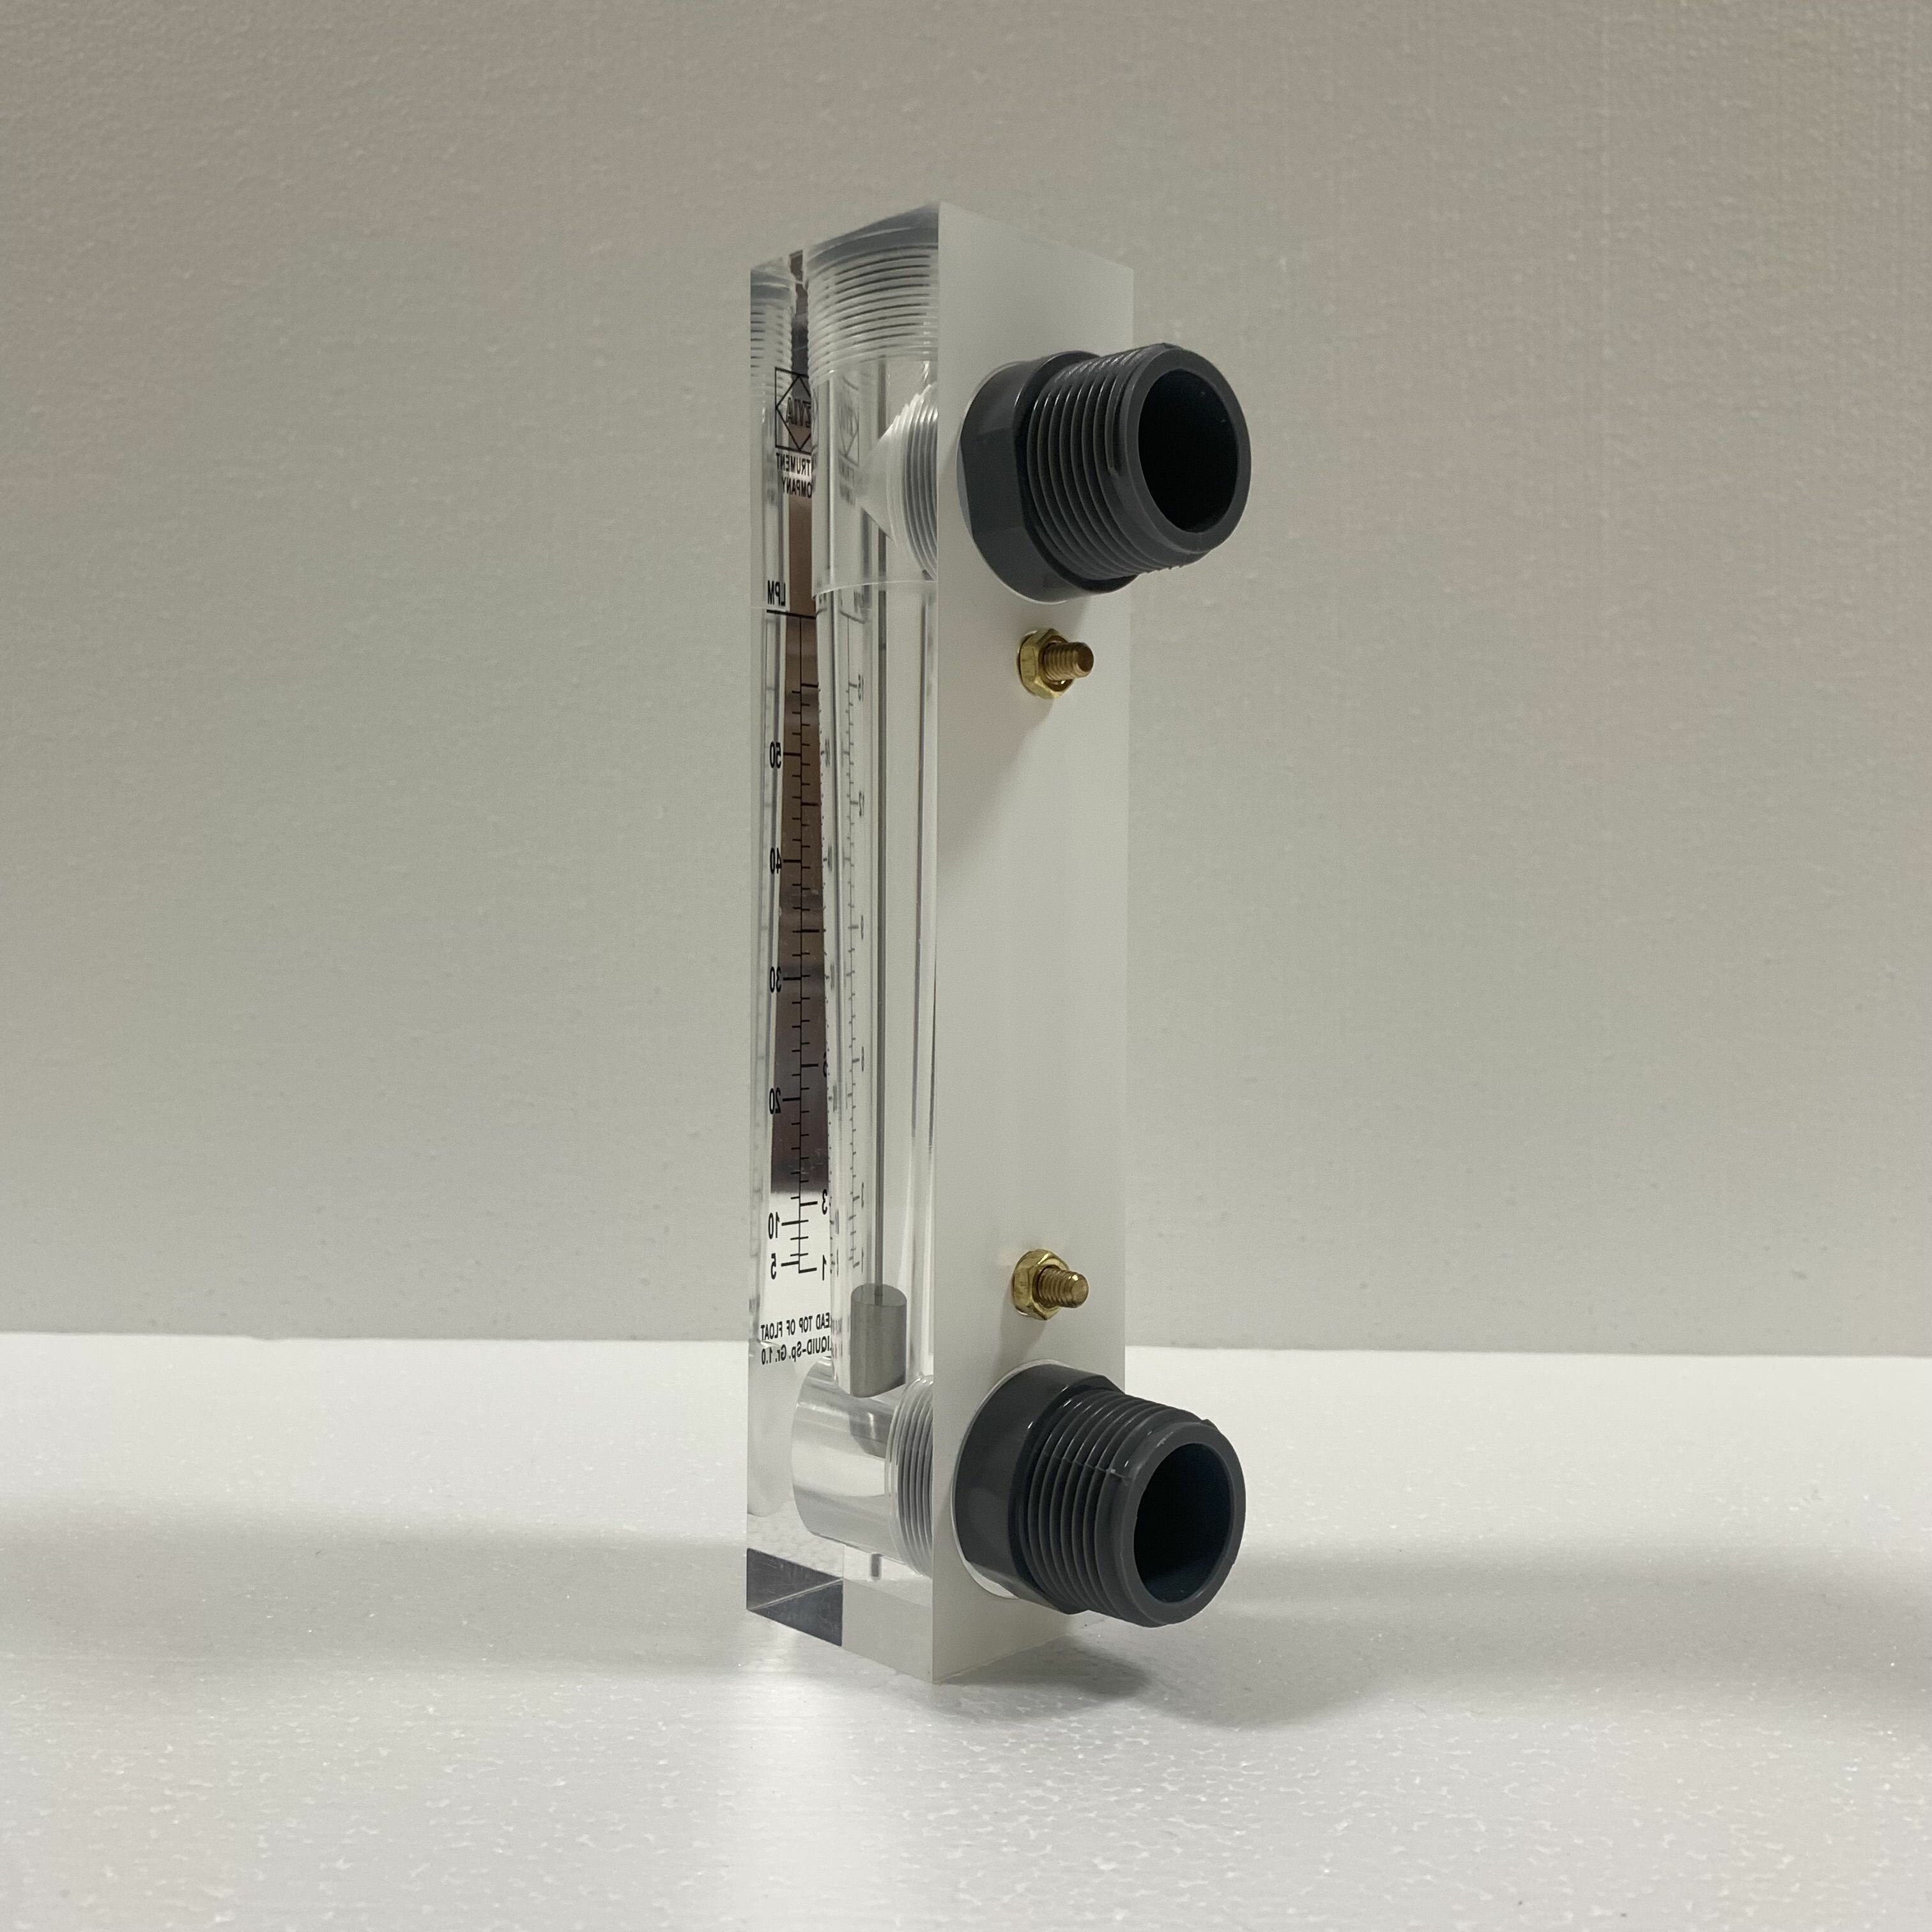 Ротаметр (расходомер) воды LZM-25Z, диапазон измерения 1-15 г/м и 5-50 л/м, акриловый корпус, фитинги ПВХ, без регулятора расхода - фотография № 4